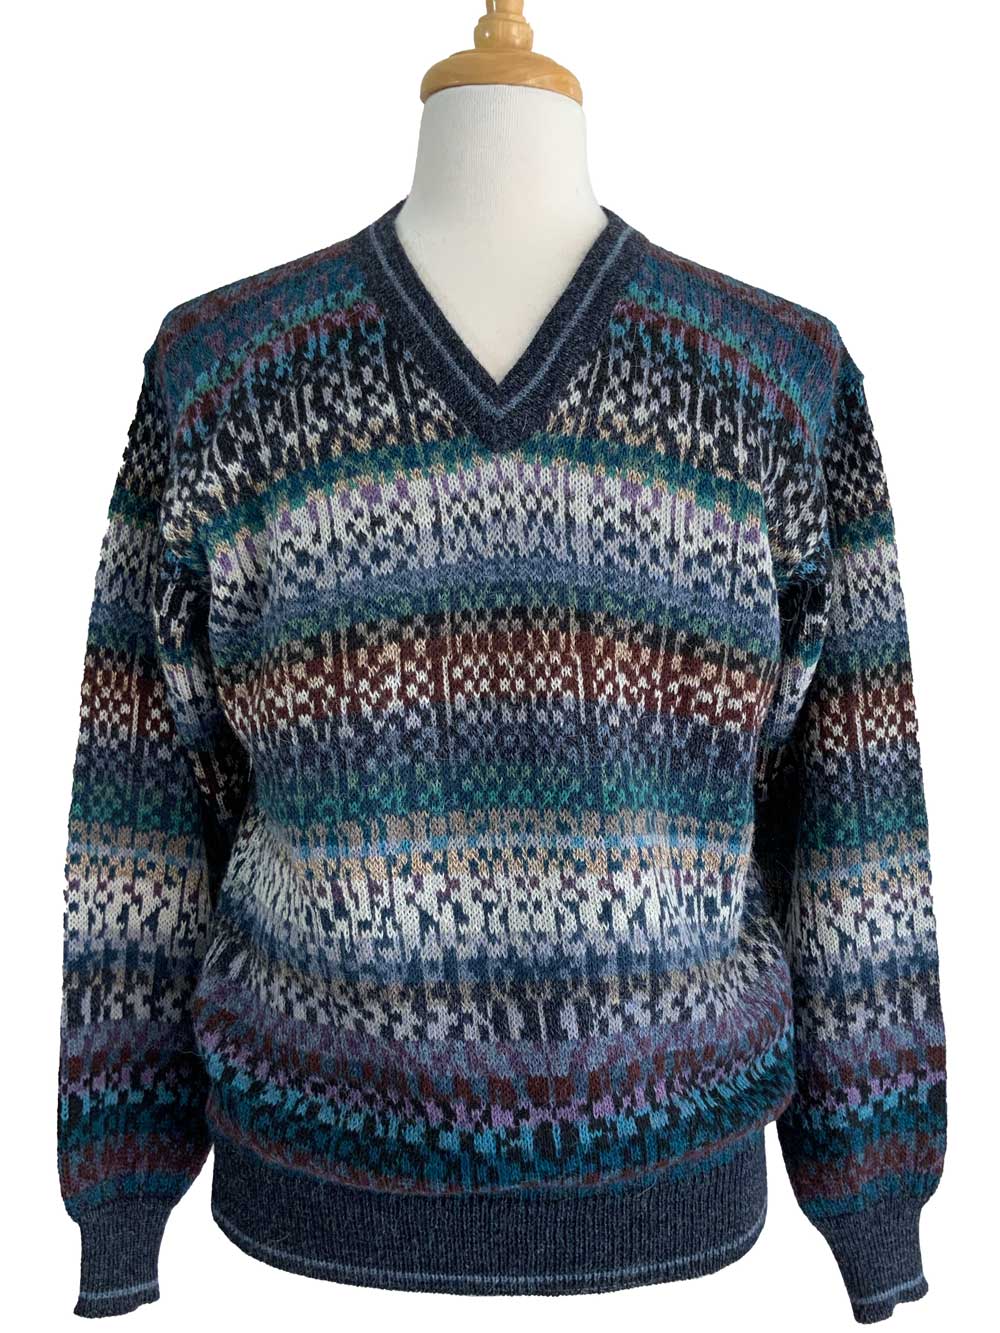 Owen V-Neck Sweater Teal Multi -1